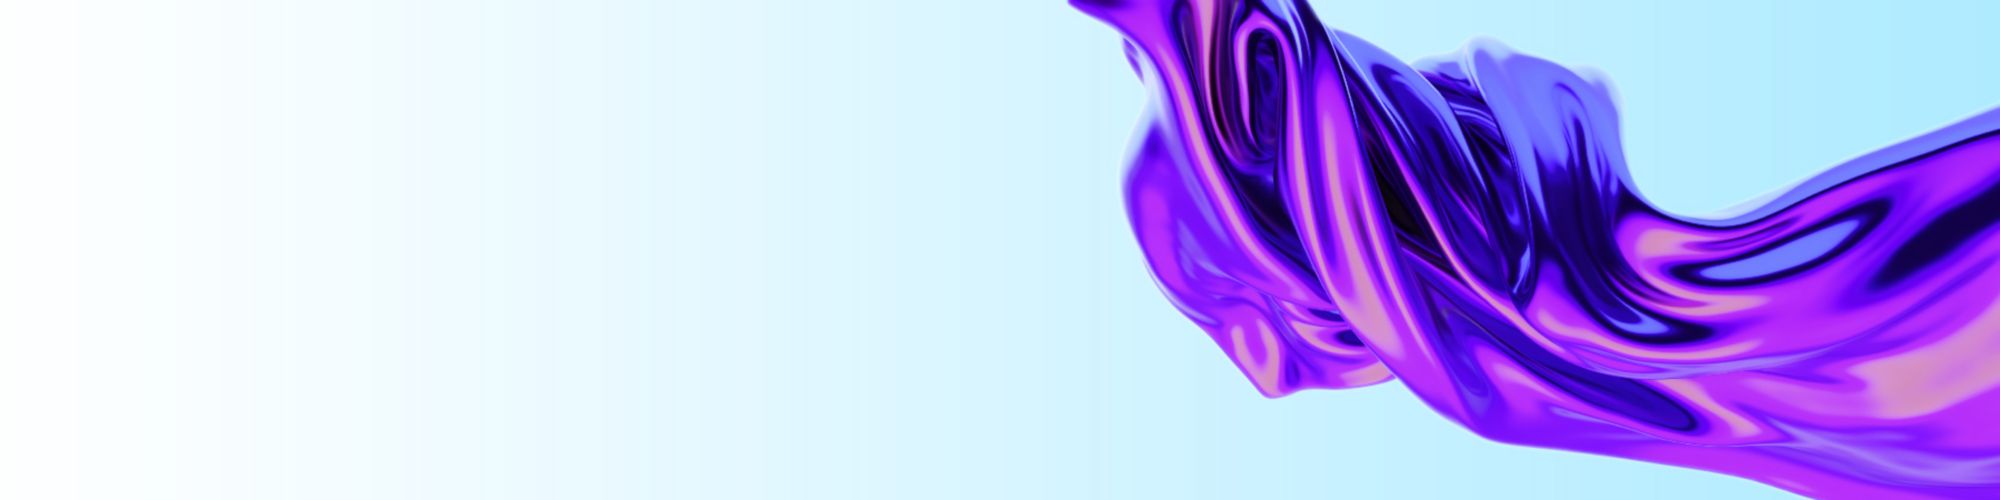 Purple vortex abstract in light blue background banner